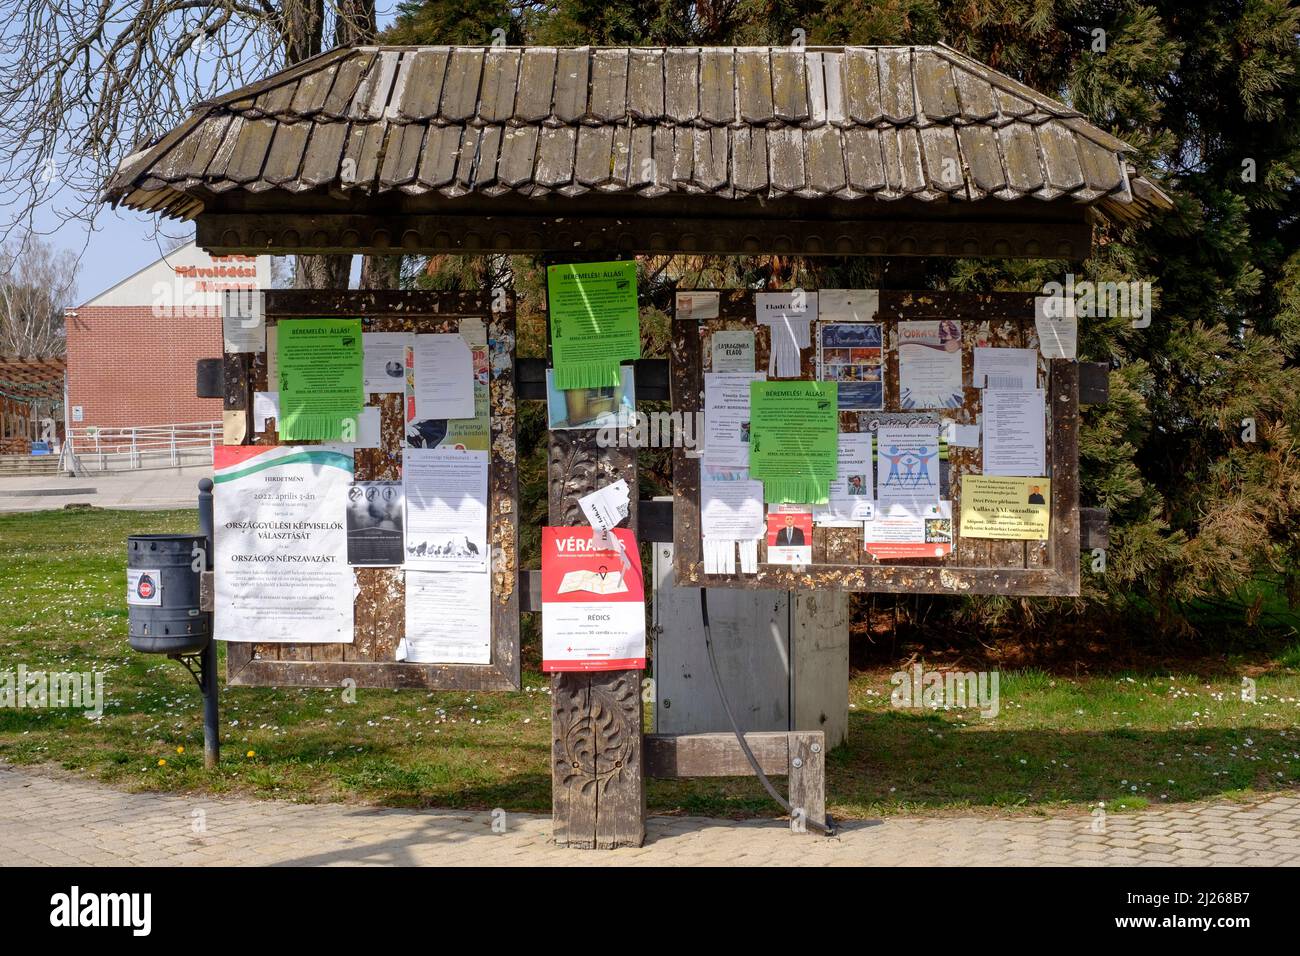 tablón de anuncios tradicional cubierto en múltiples avisos anclados en el centro de la ciudad de lenti, condado de zala, hungría Foto de stock